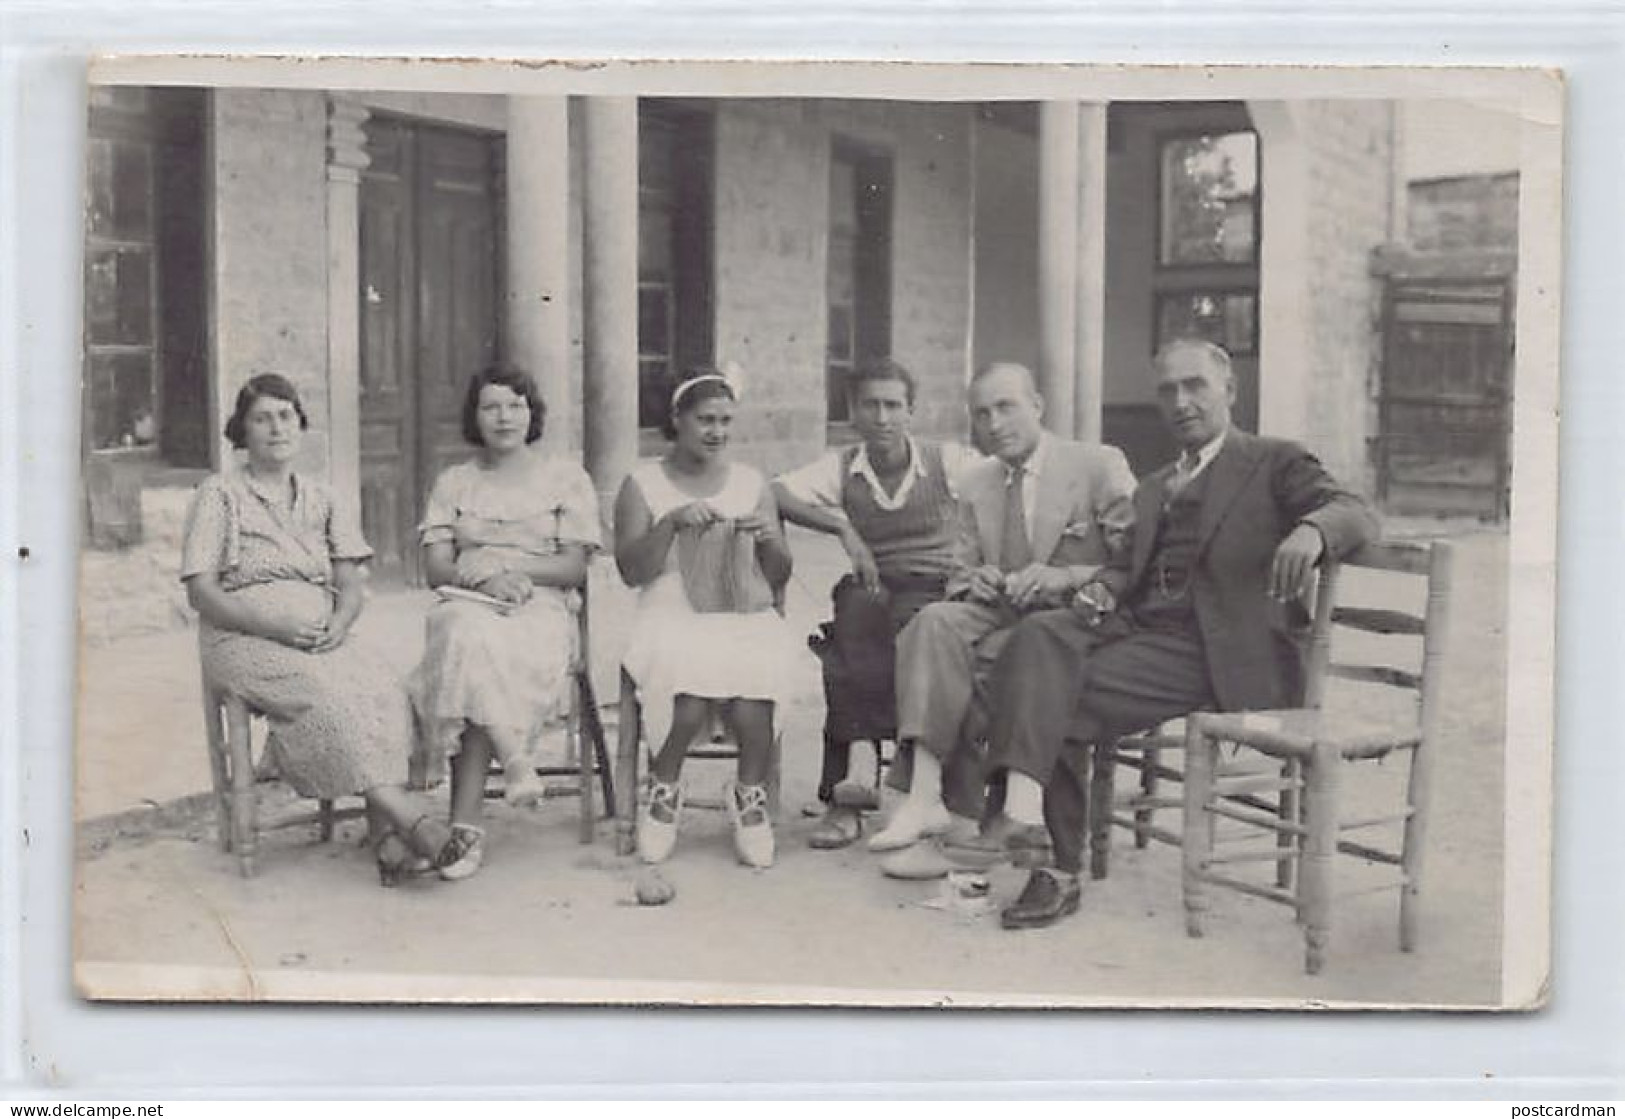 Liban - SOUK EL GHARB - Professeurs Et élèves De L'Ecole Américaine - CARTE PHOTO Datée Du 19 Septembre 1937 - Lebanon